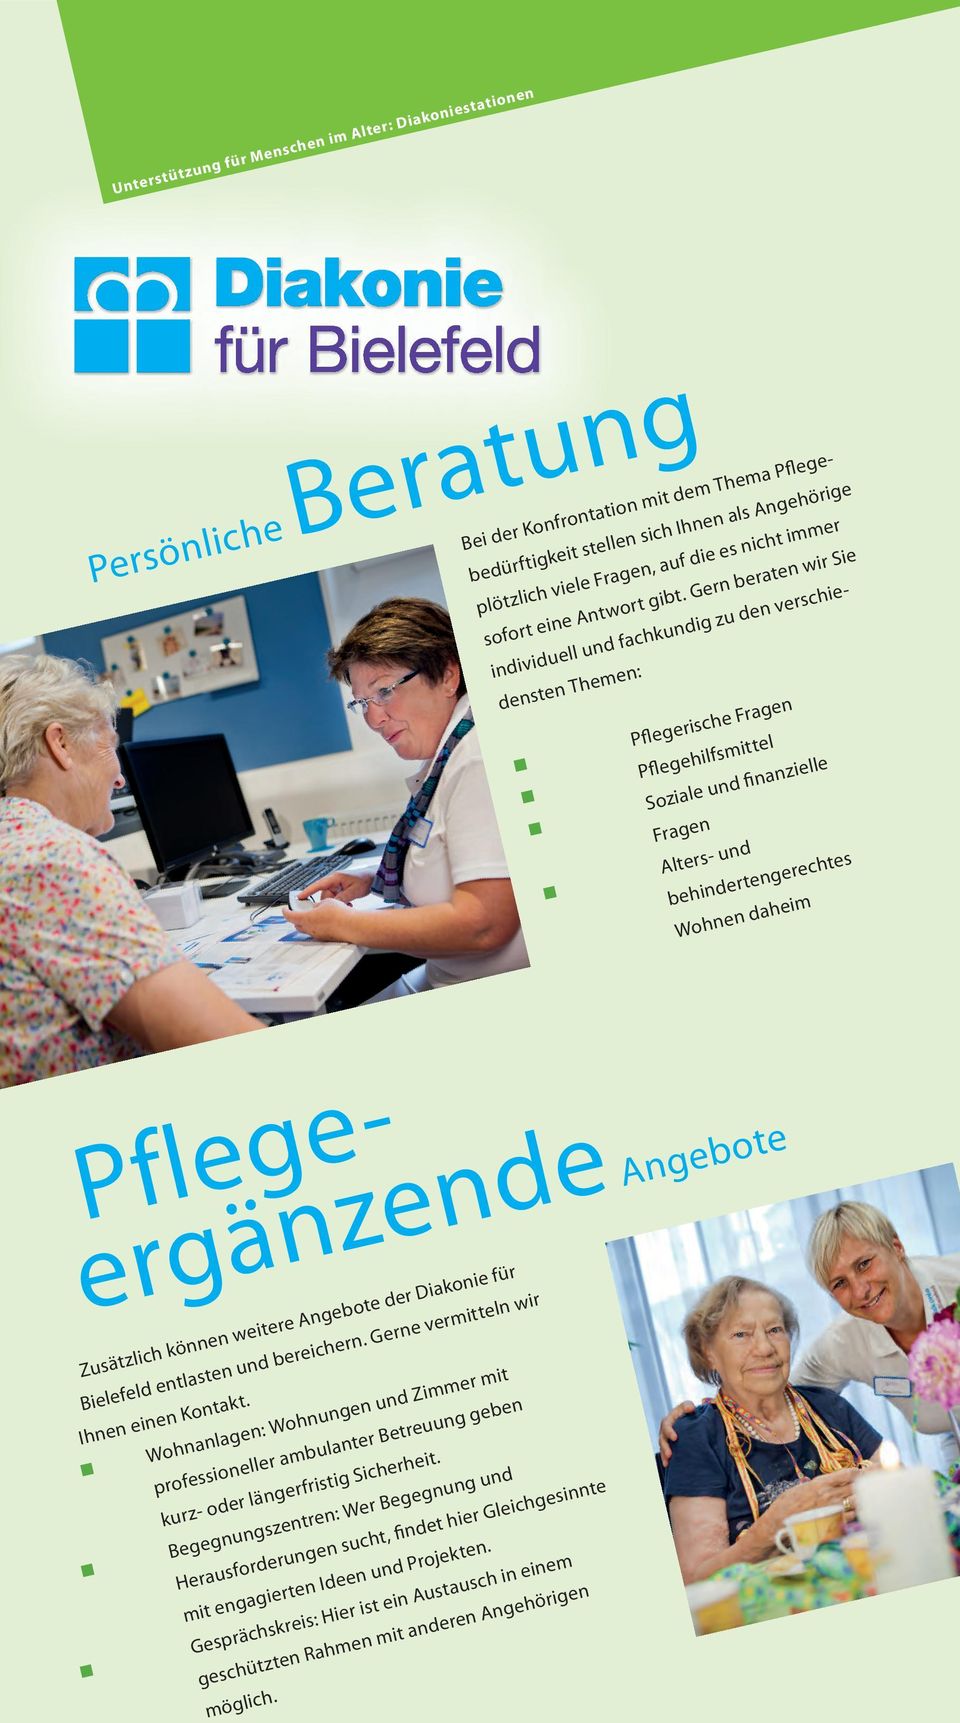 Pflegeergänzende Angebote Zusätzlich können weitere Angebote der Diakonie für Bielefeld entlasten und bereichern. Gerne vermitteln wir Ihnen einen Kontakt.